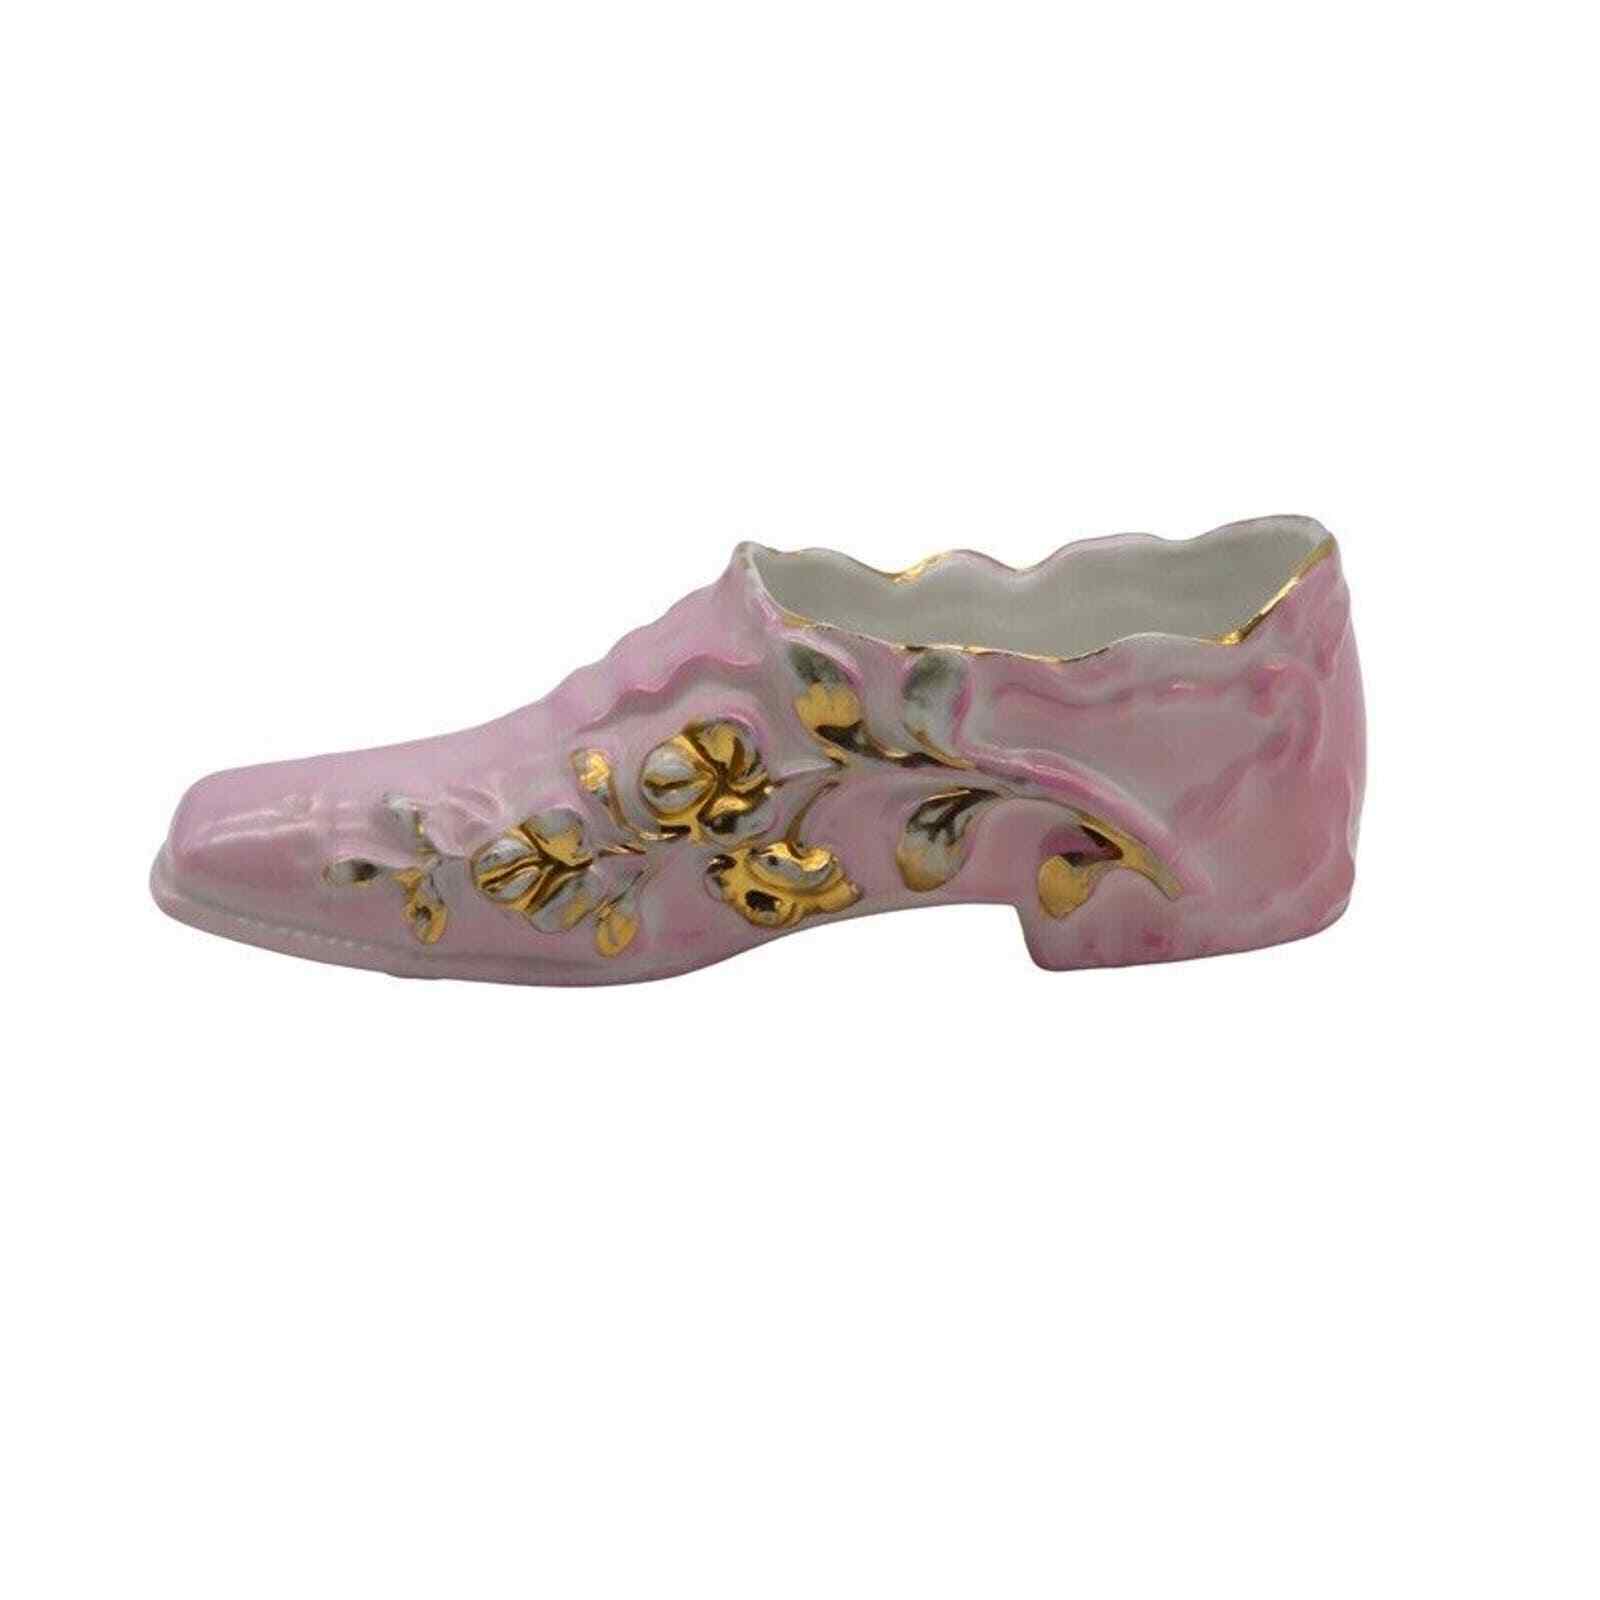 Vintage Porcelain Pink Gold Shoe Slipper